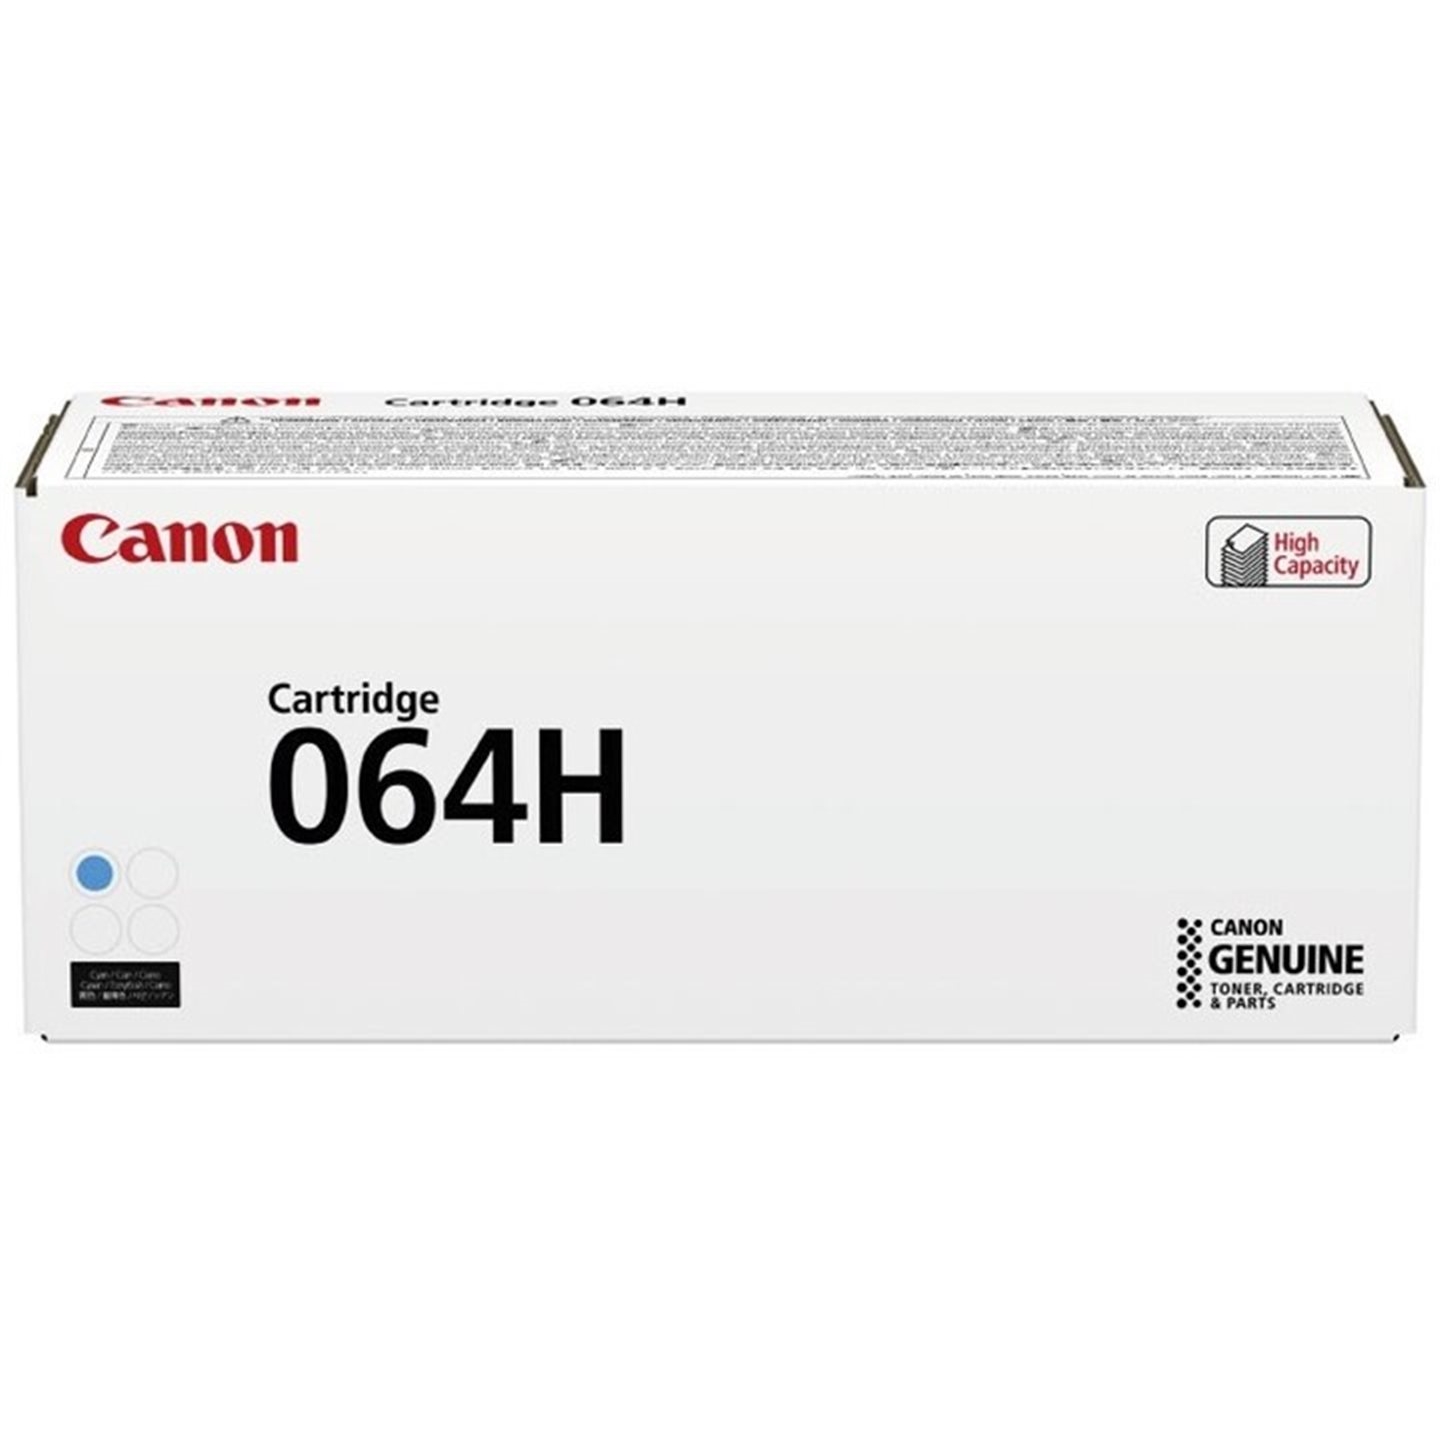 Toner Canon 064HC, i-SENSYS MF832Cdw, cyan, 4936C001, originál